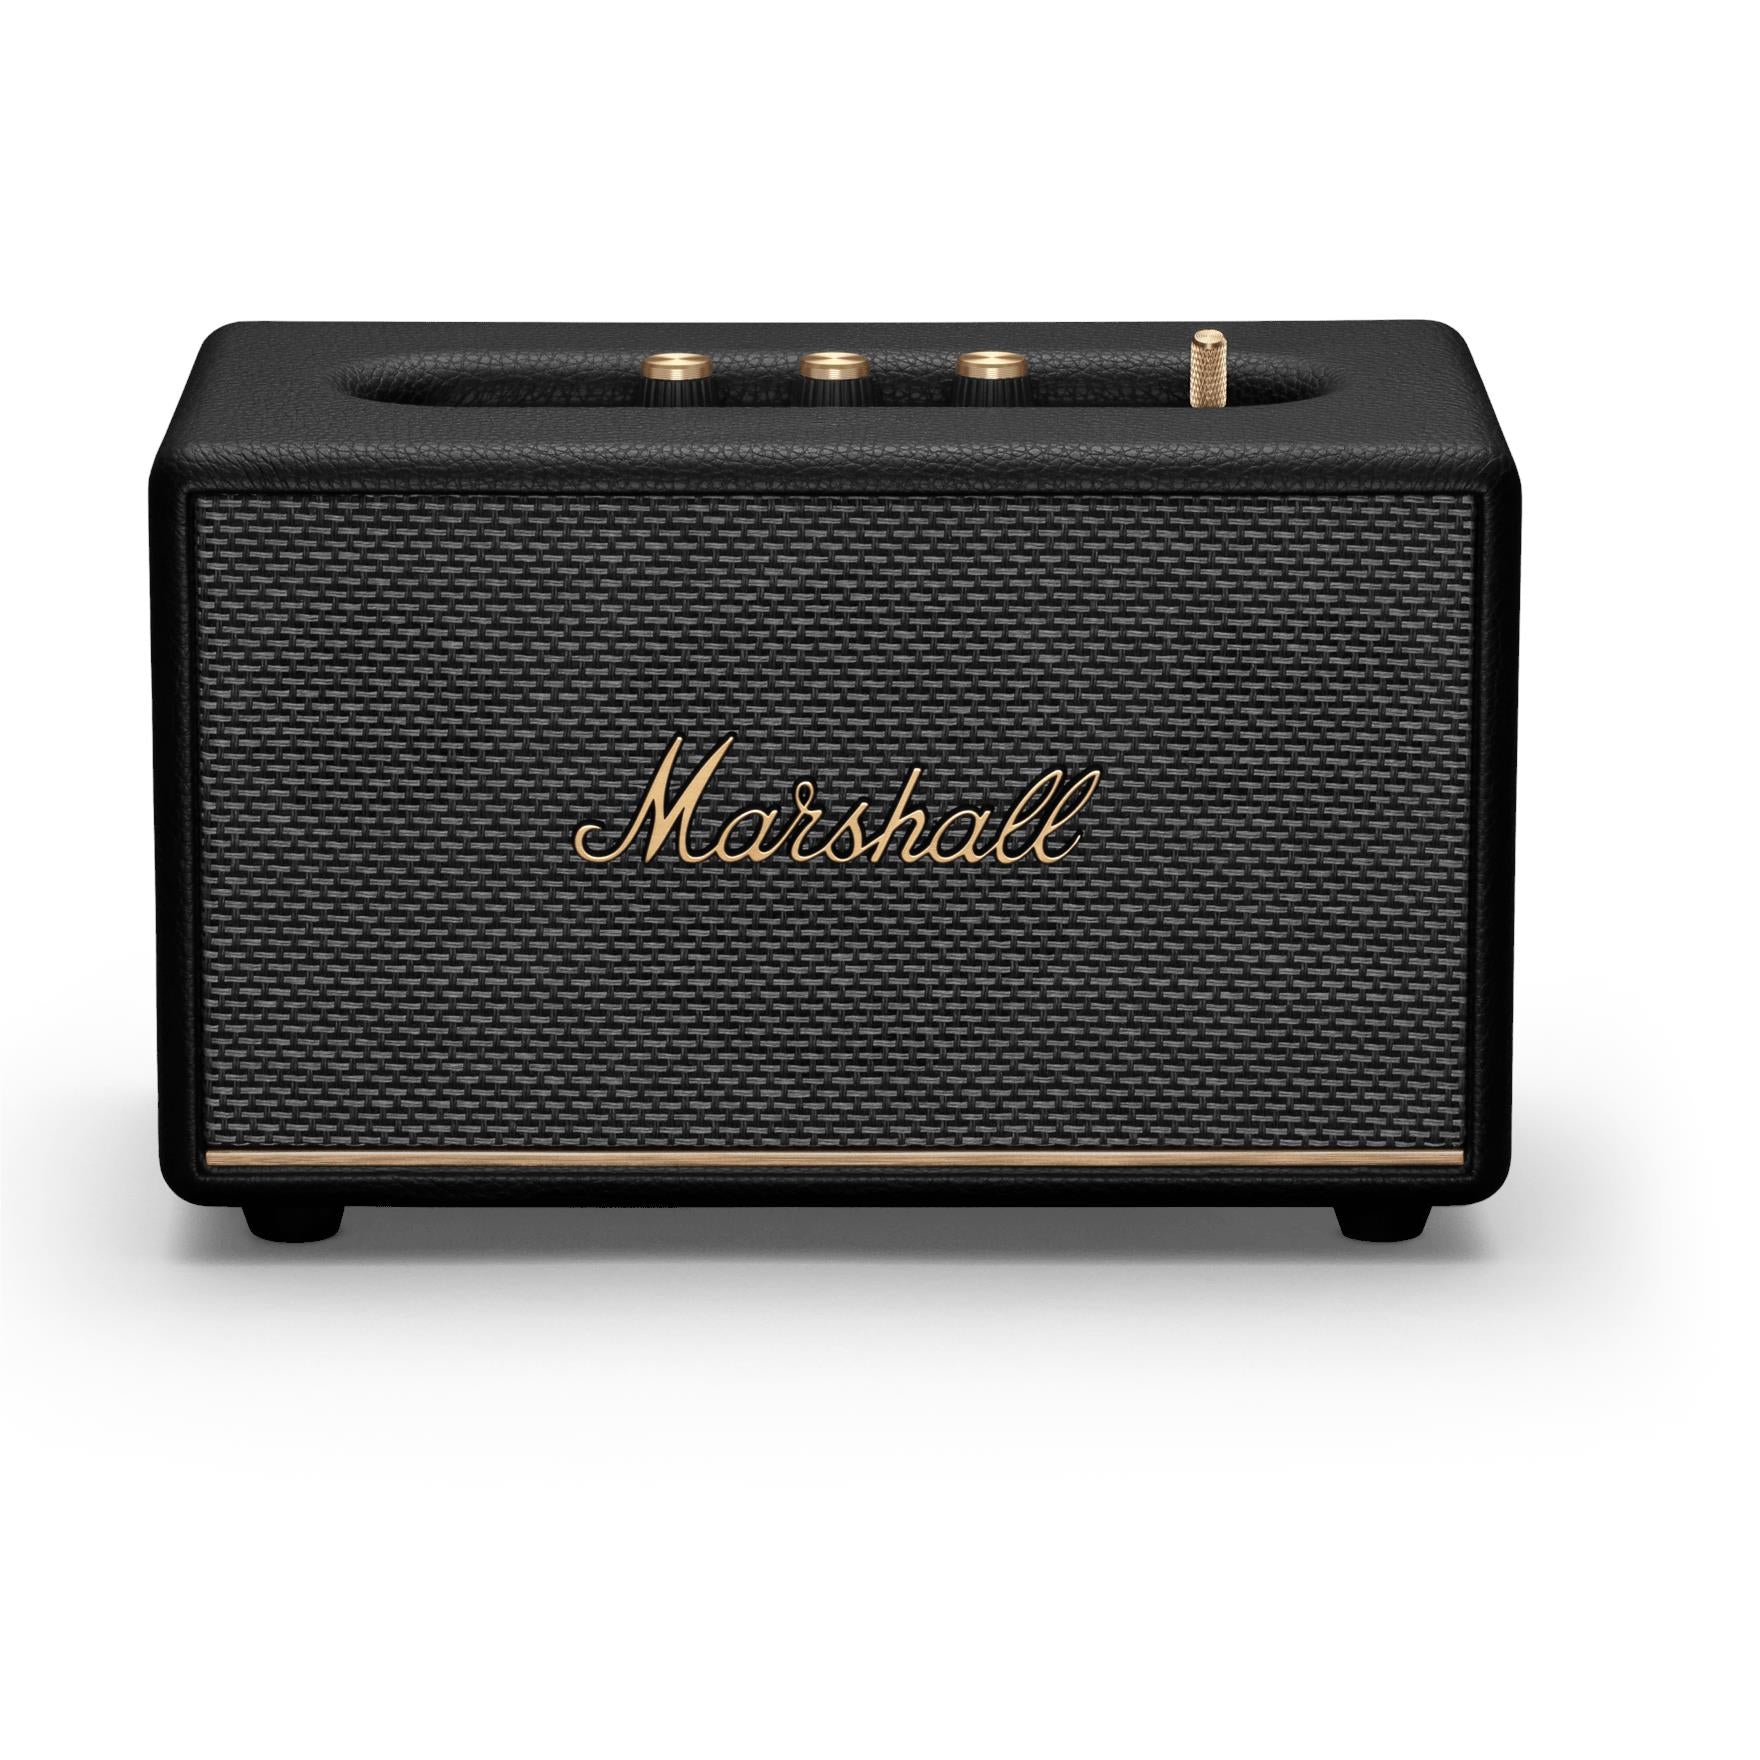 Marshall Woburn III Bluetooth 5.2 Stereo Speaker with 4 Speaker